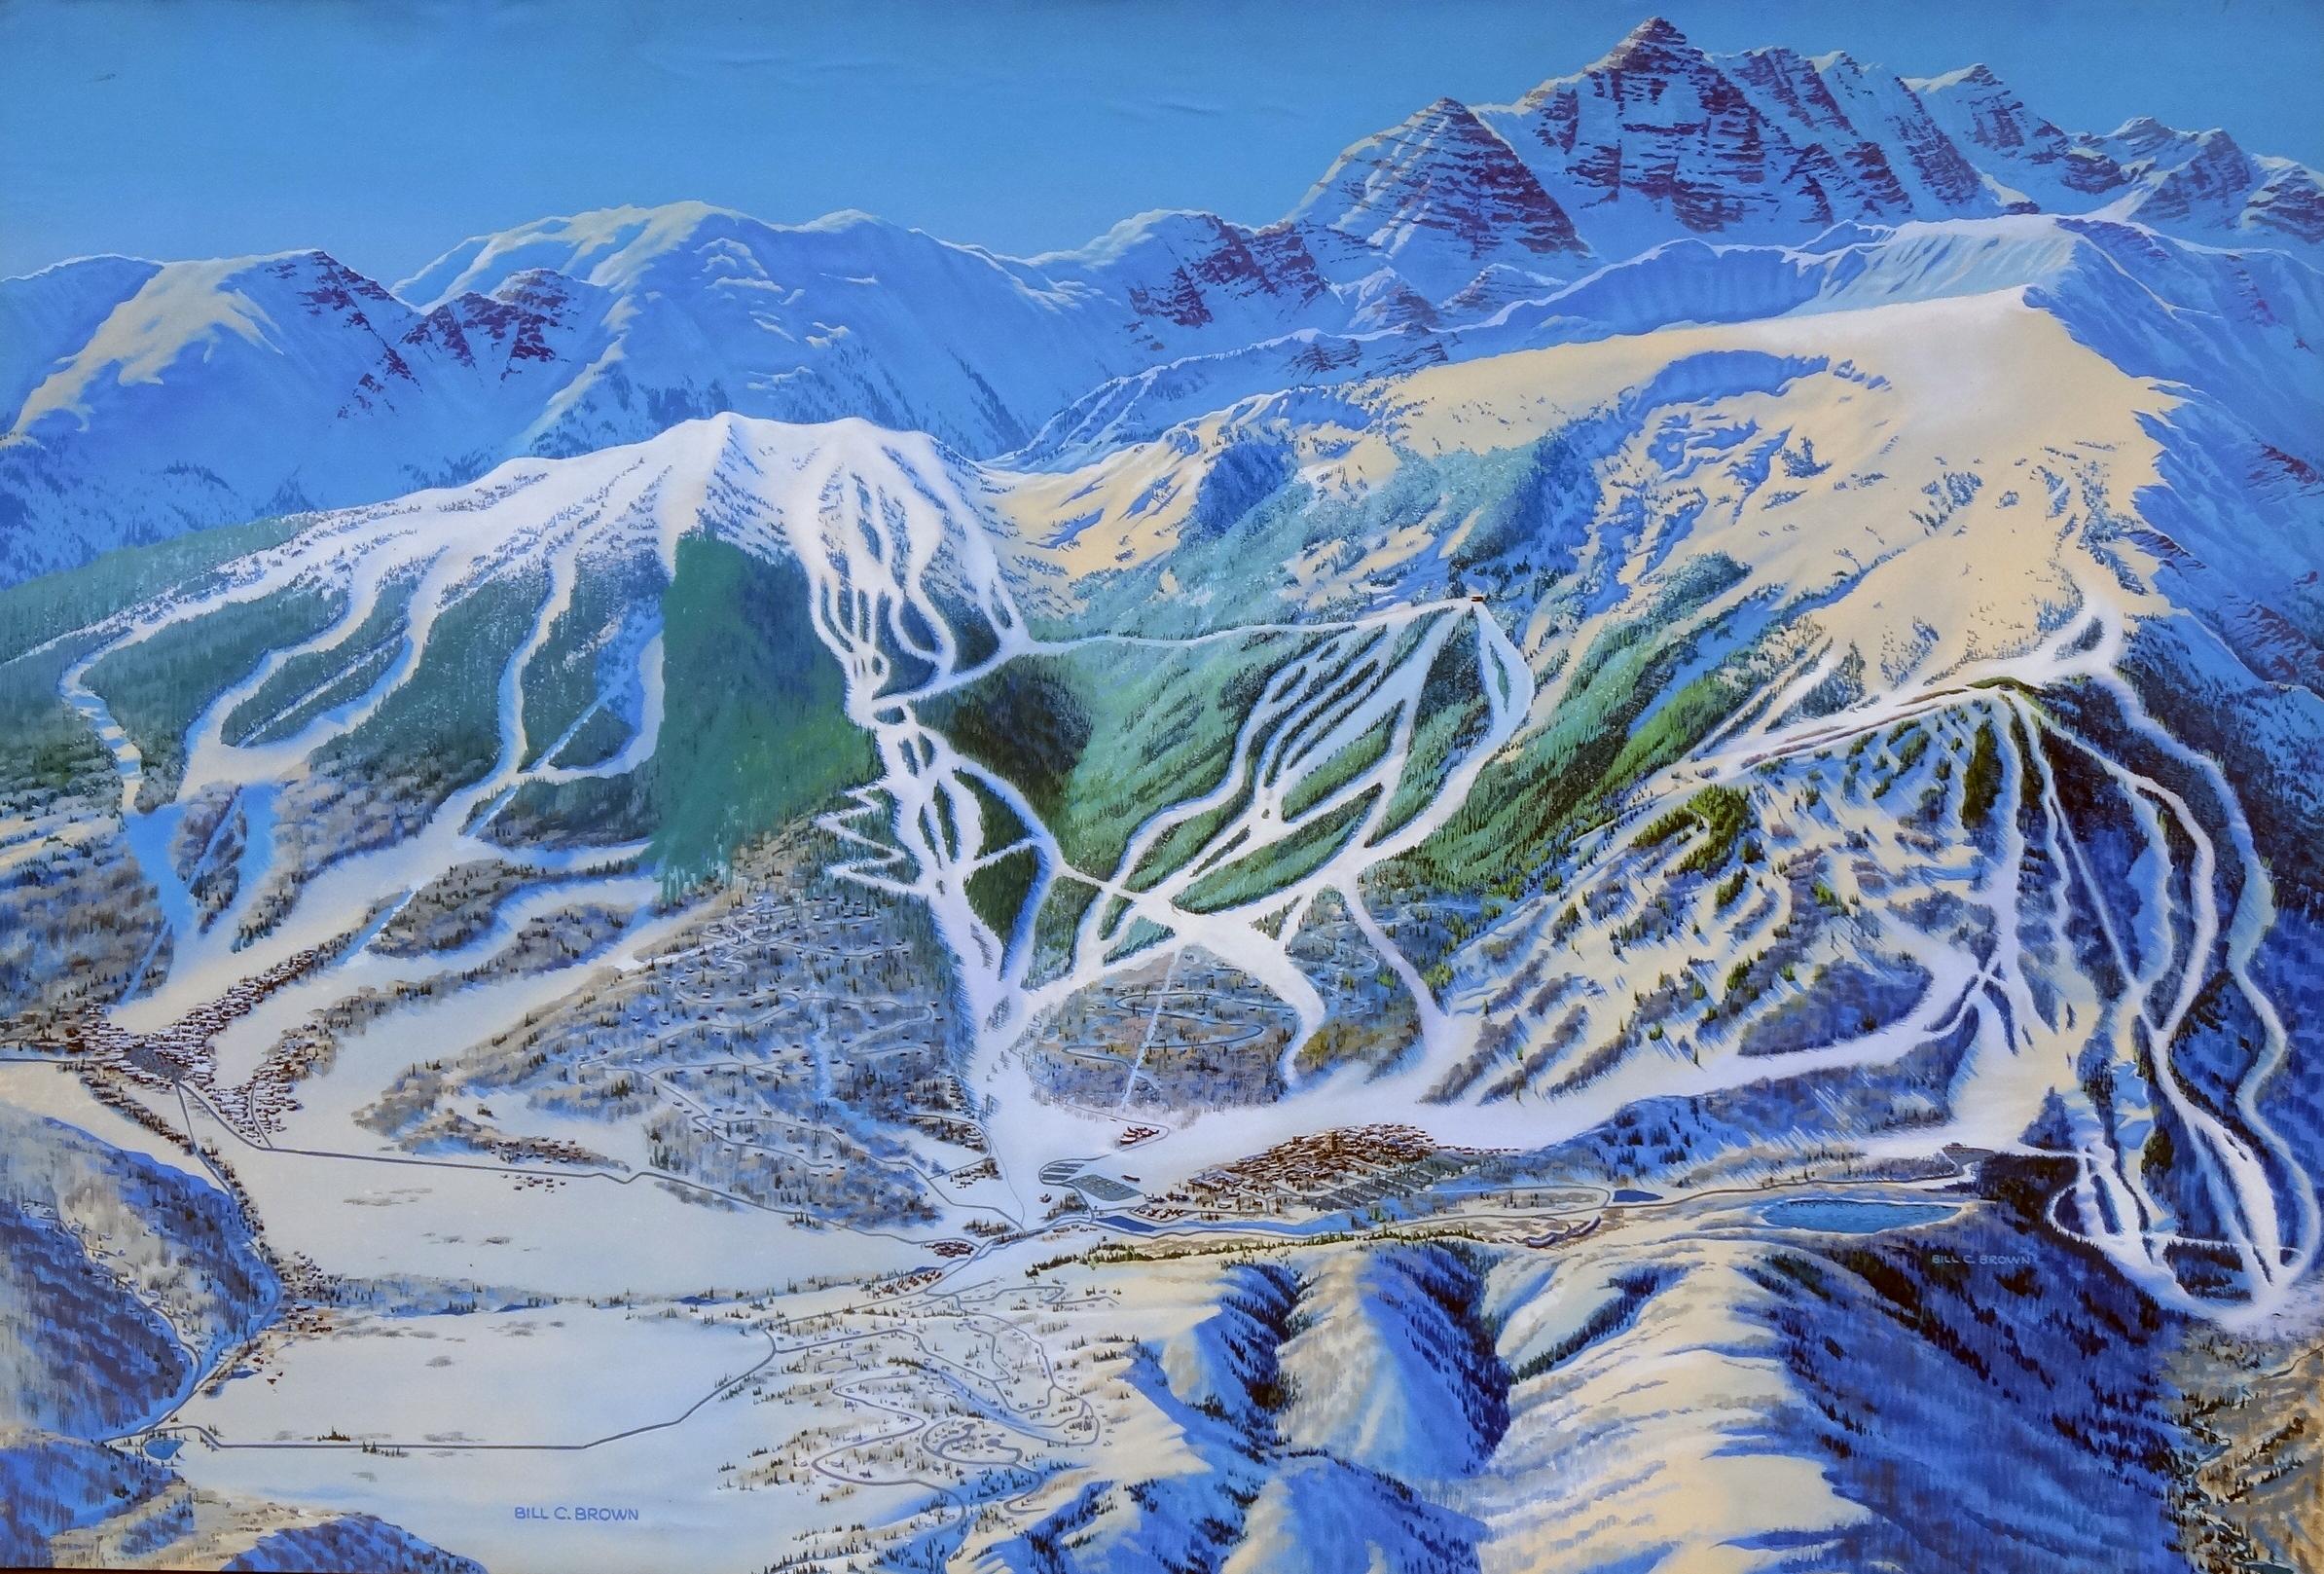 Bill C. Brown Landscape Painting – Trail Map, Gemälde eines Aspen-Schneewittchens